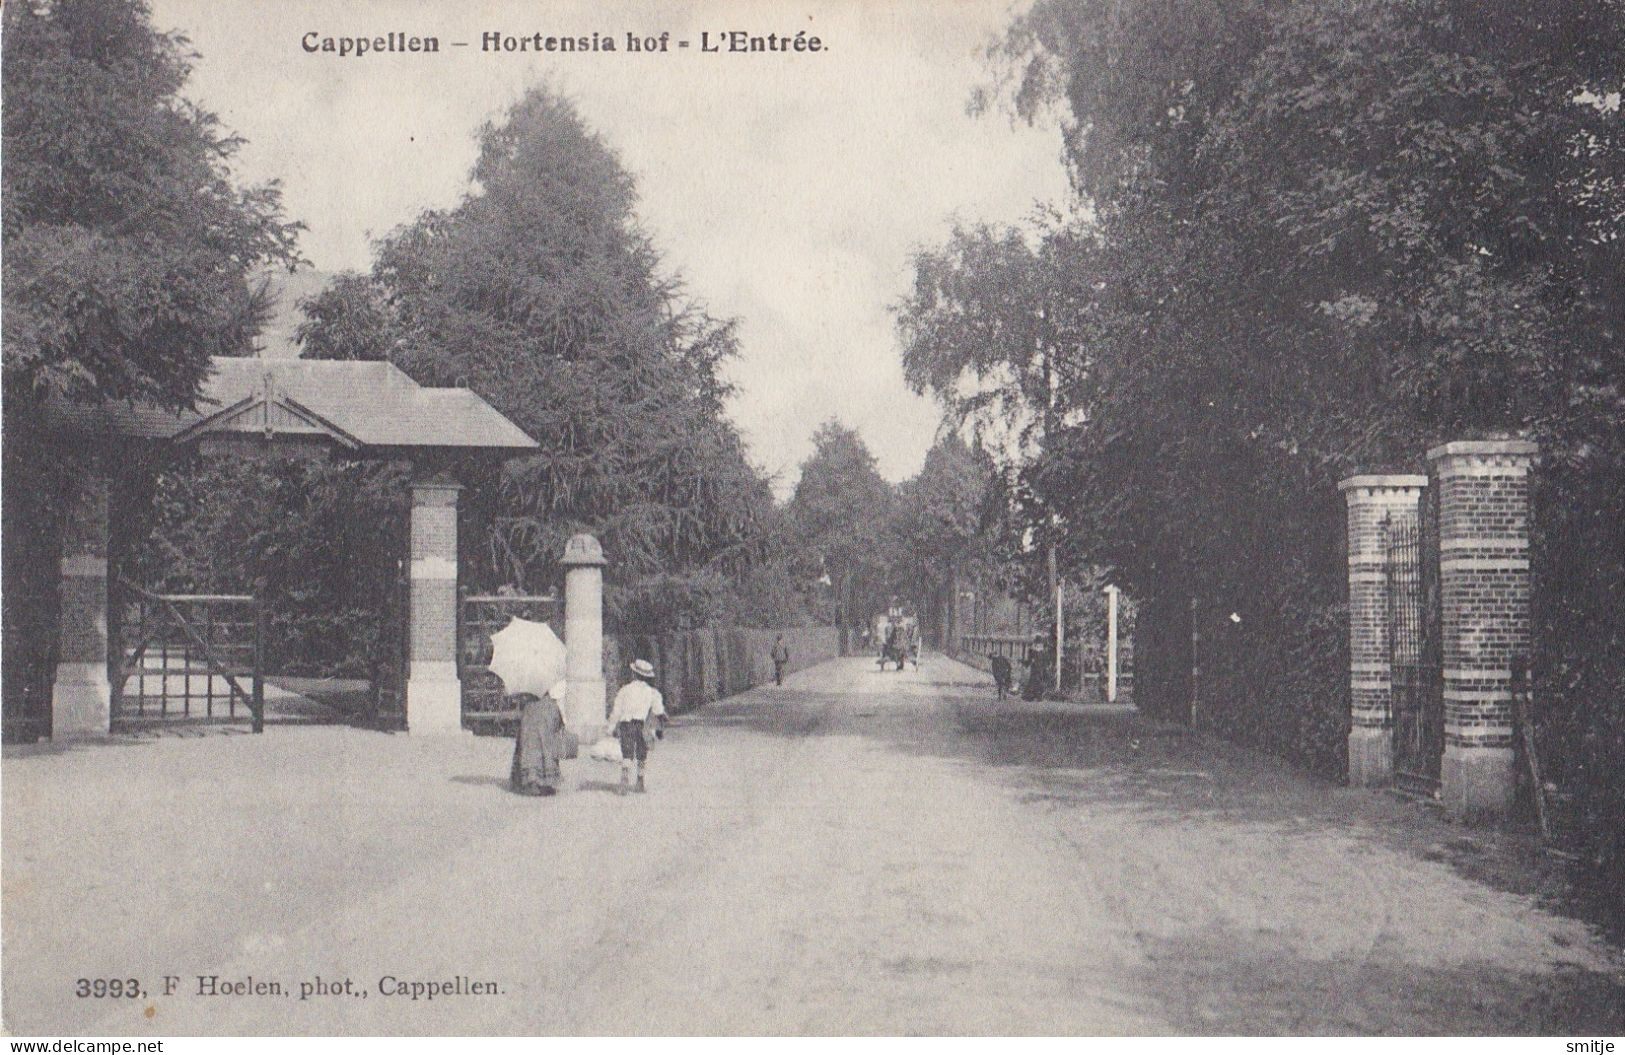 KAPELLEN 1908 ENTREE KASTEEL VILLA HORTENSIA-HOF - KLEINE ANIMATIE - HOELEN 3993 - Kapellen